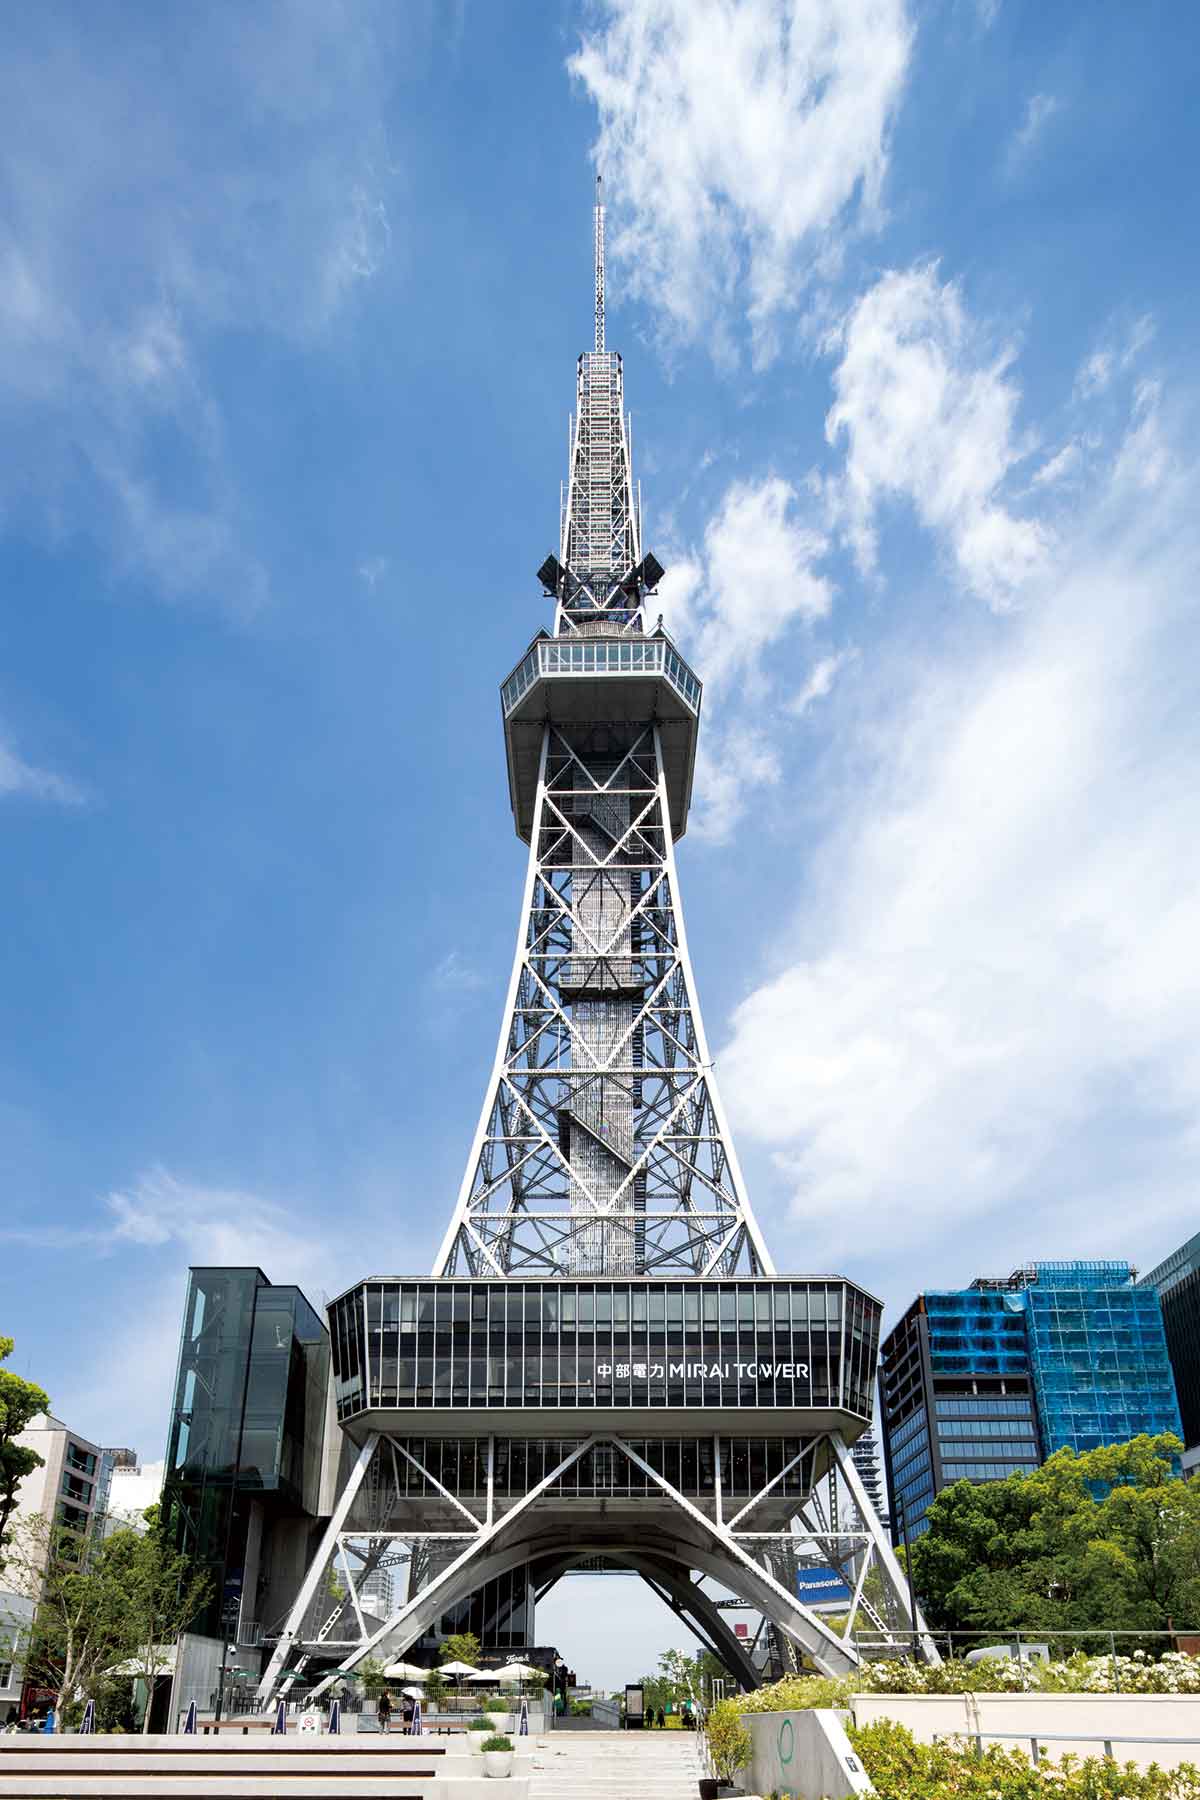 中部電力 MIRAI TOWERは、1954年(昭和29年)に、名古屋テレビ塔として、観光とテレビ放送用電波発信のために建設された施設です